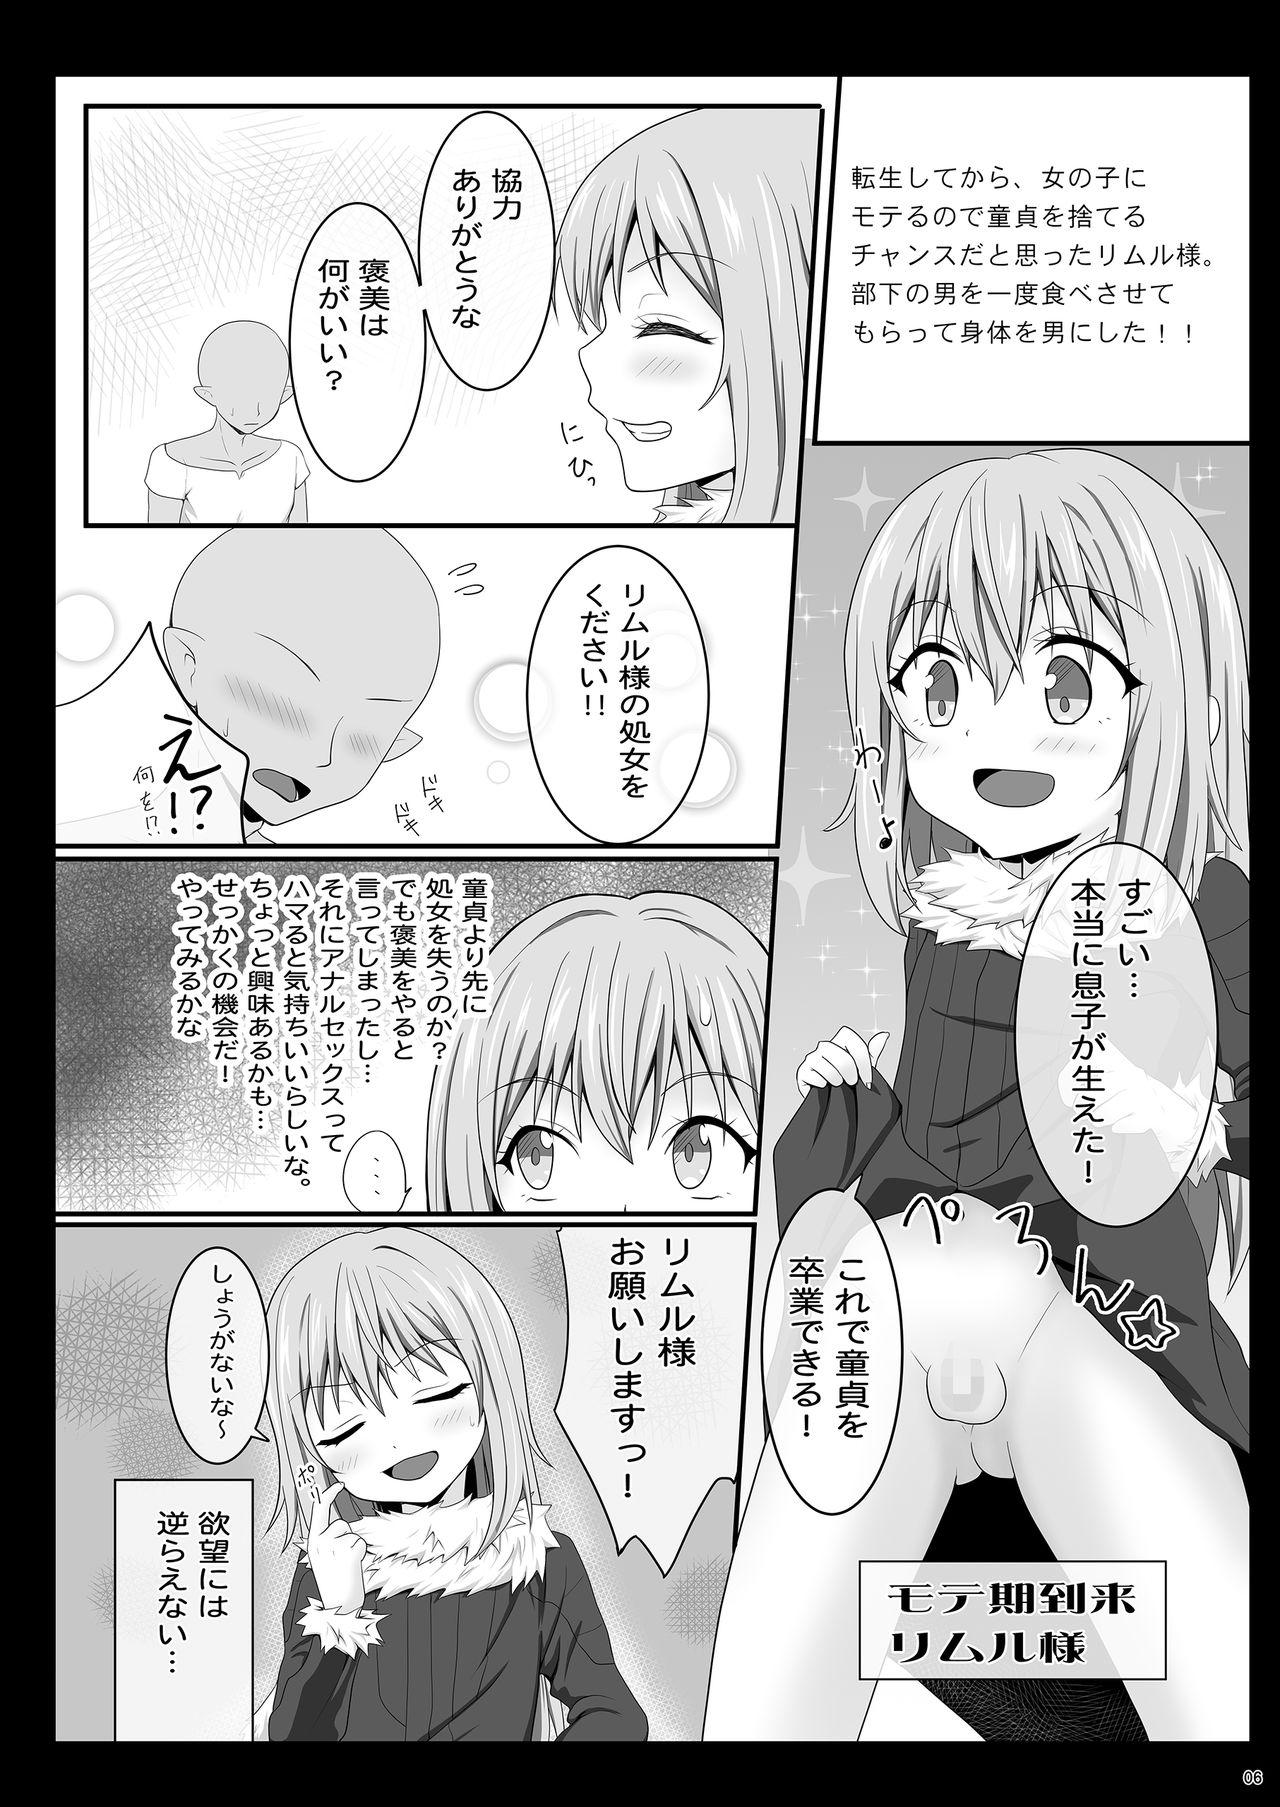 Sapphicerotica Etchina Rimuru-sama No Matome - Tensei shitara slime datta ken Titties - Page 5